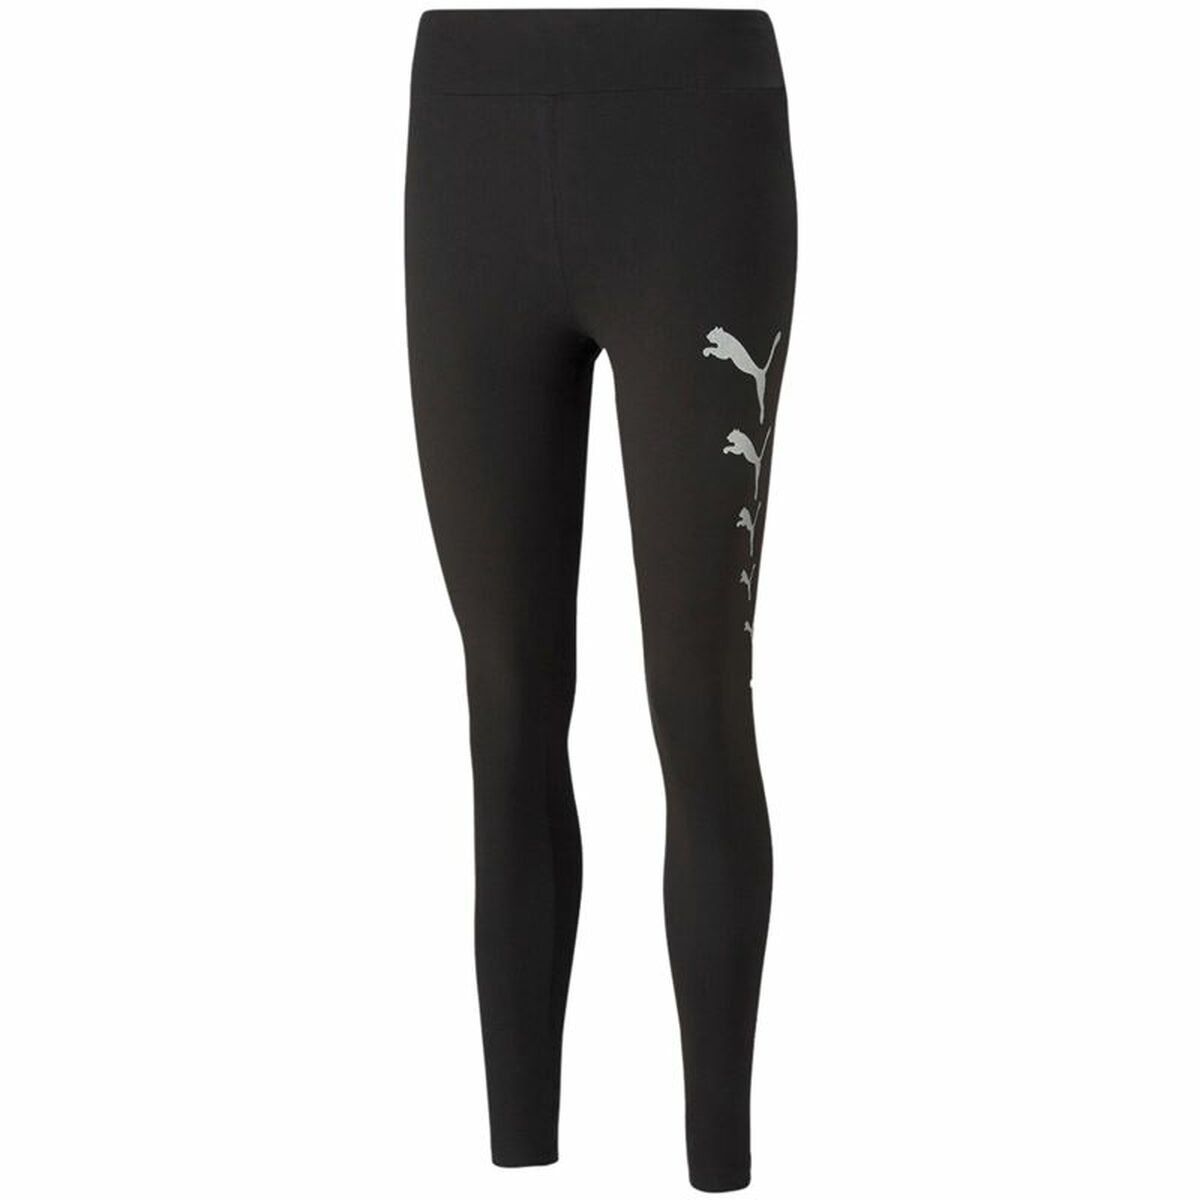 Sport leggings for Women Puma Spark Black